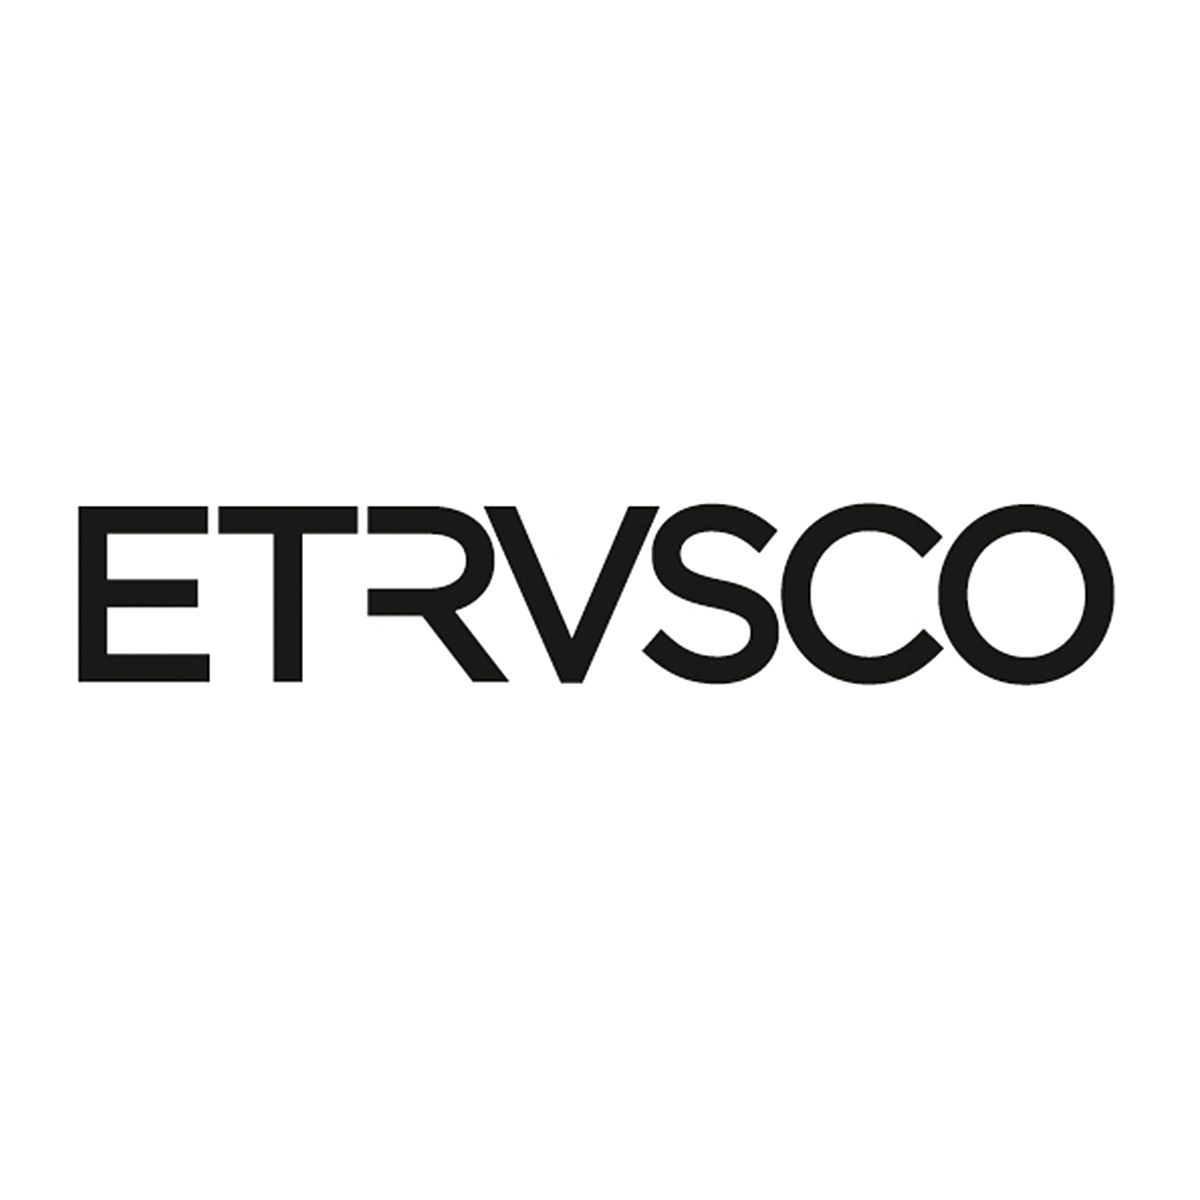 Etrusco logo